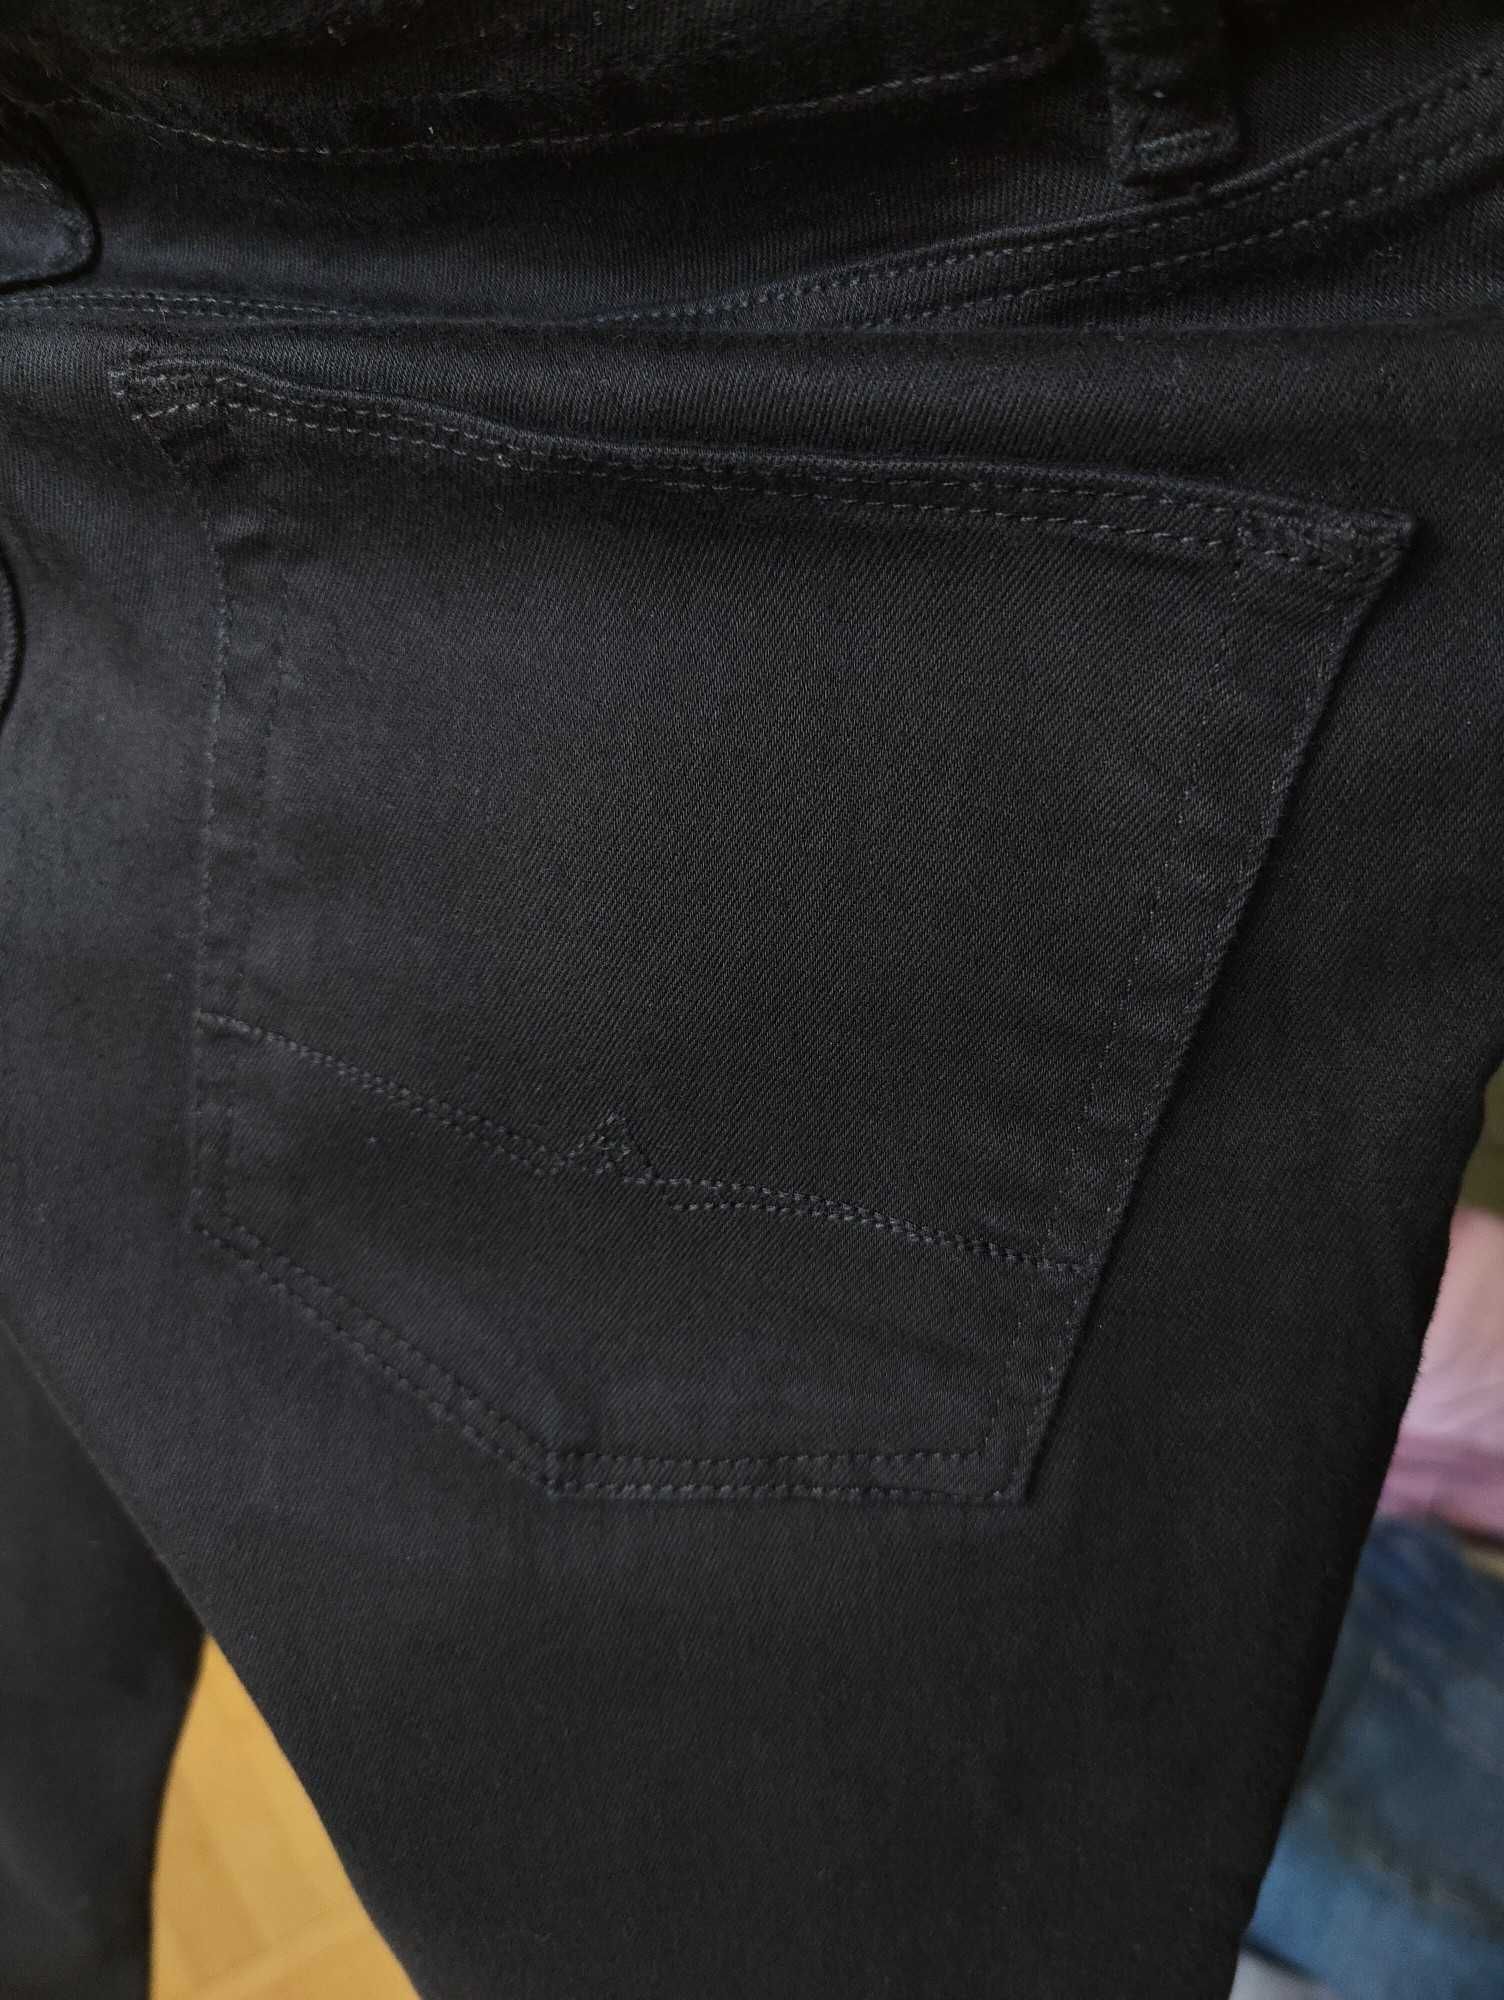 Джинсы Asos jeans United Kingdom w32 stretch black.